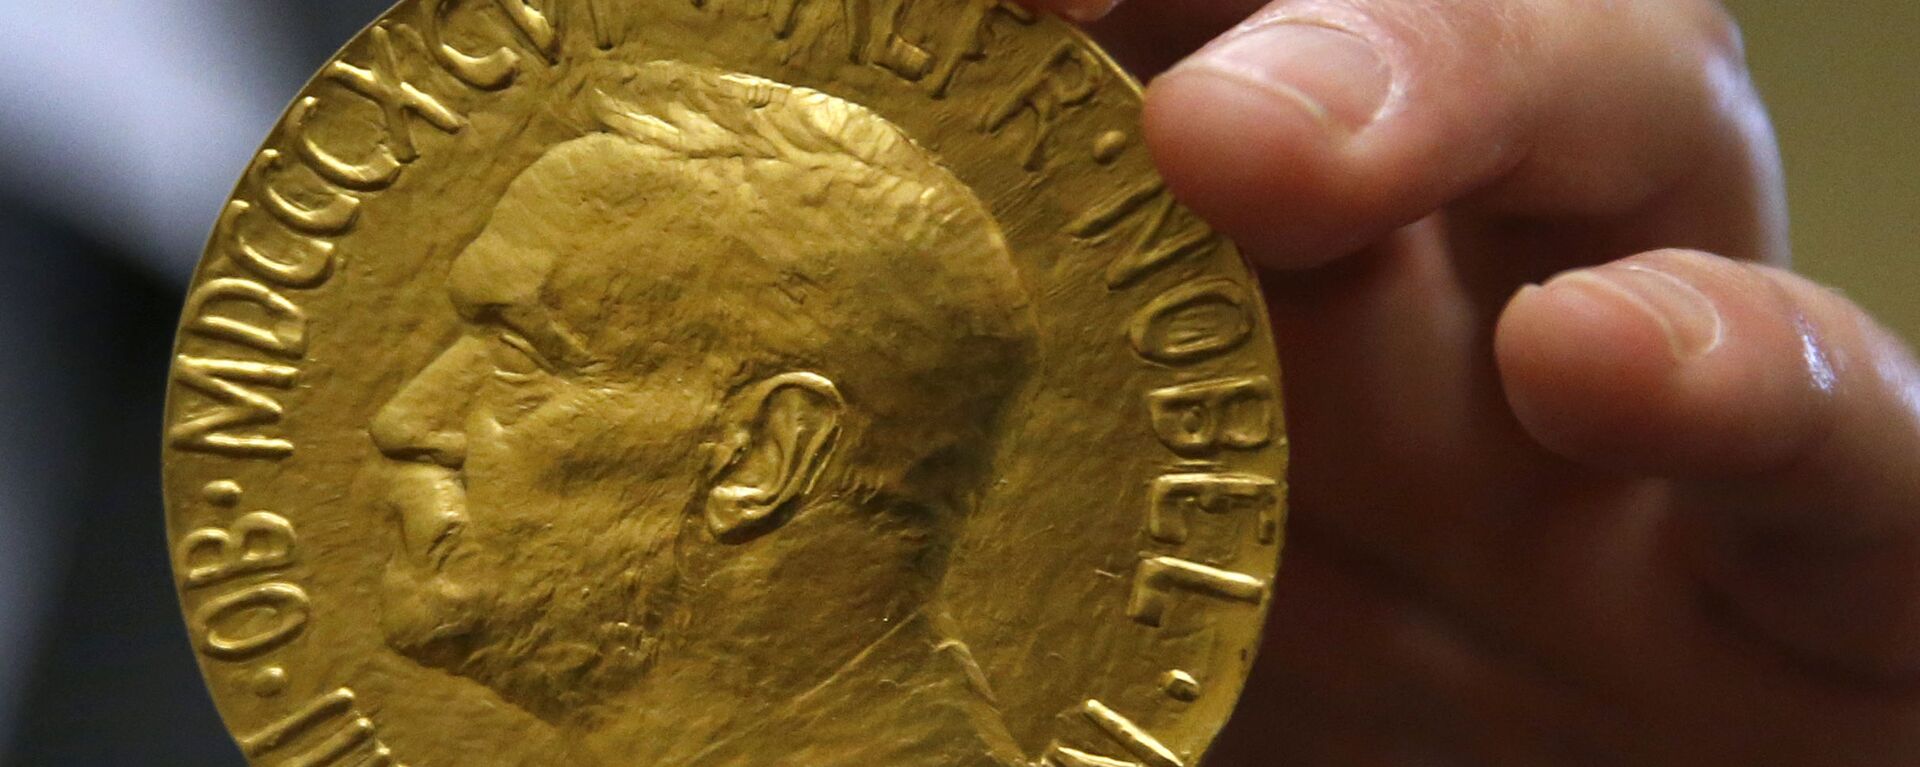 Medalla del Premio Nobel de la Paz otorgada a Carlos Saavedra Lamas subastada en 2014 - Sputnik Mundo, 1920, 23.09.2021